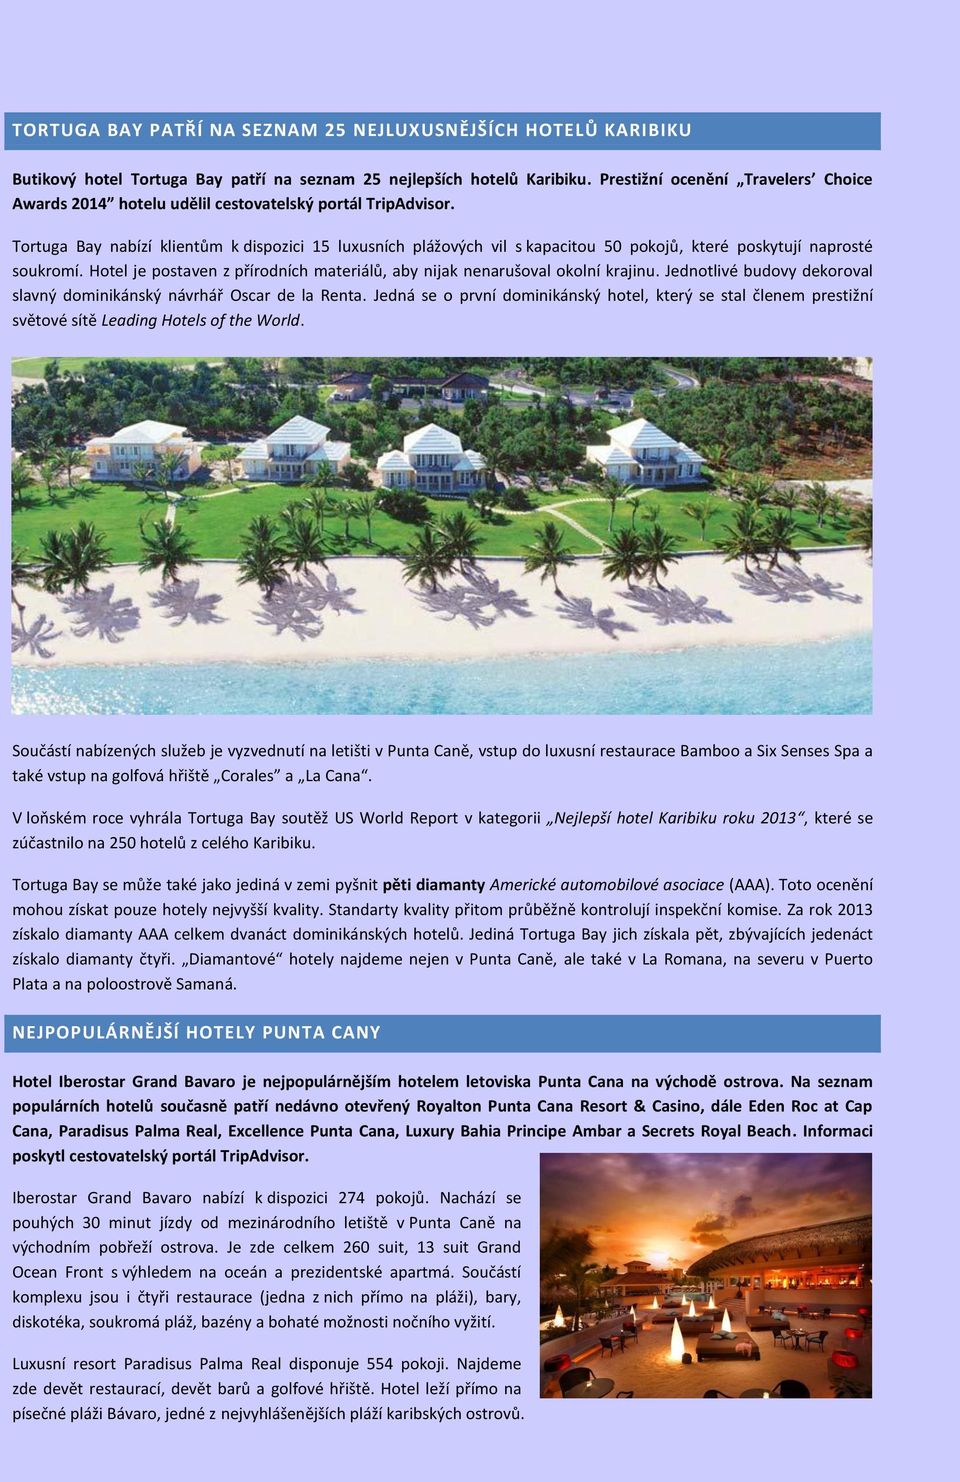 Tortuga Bay nabízí klientům k dispozici 15 luxusních plážových vil s kapacitou 50 pokojů, které poskytují naprosté soukromí.